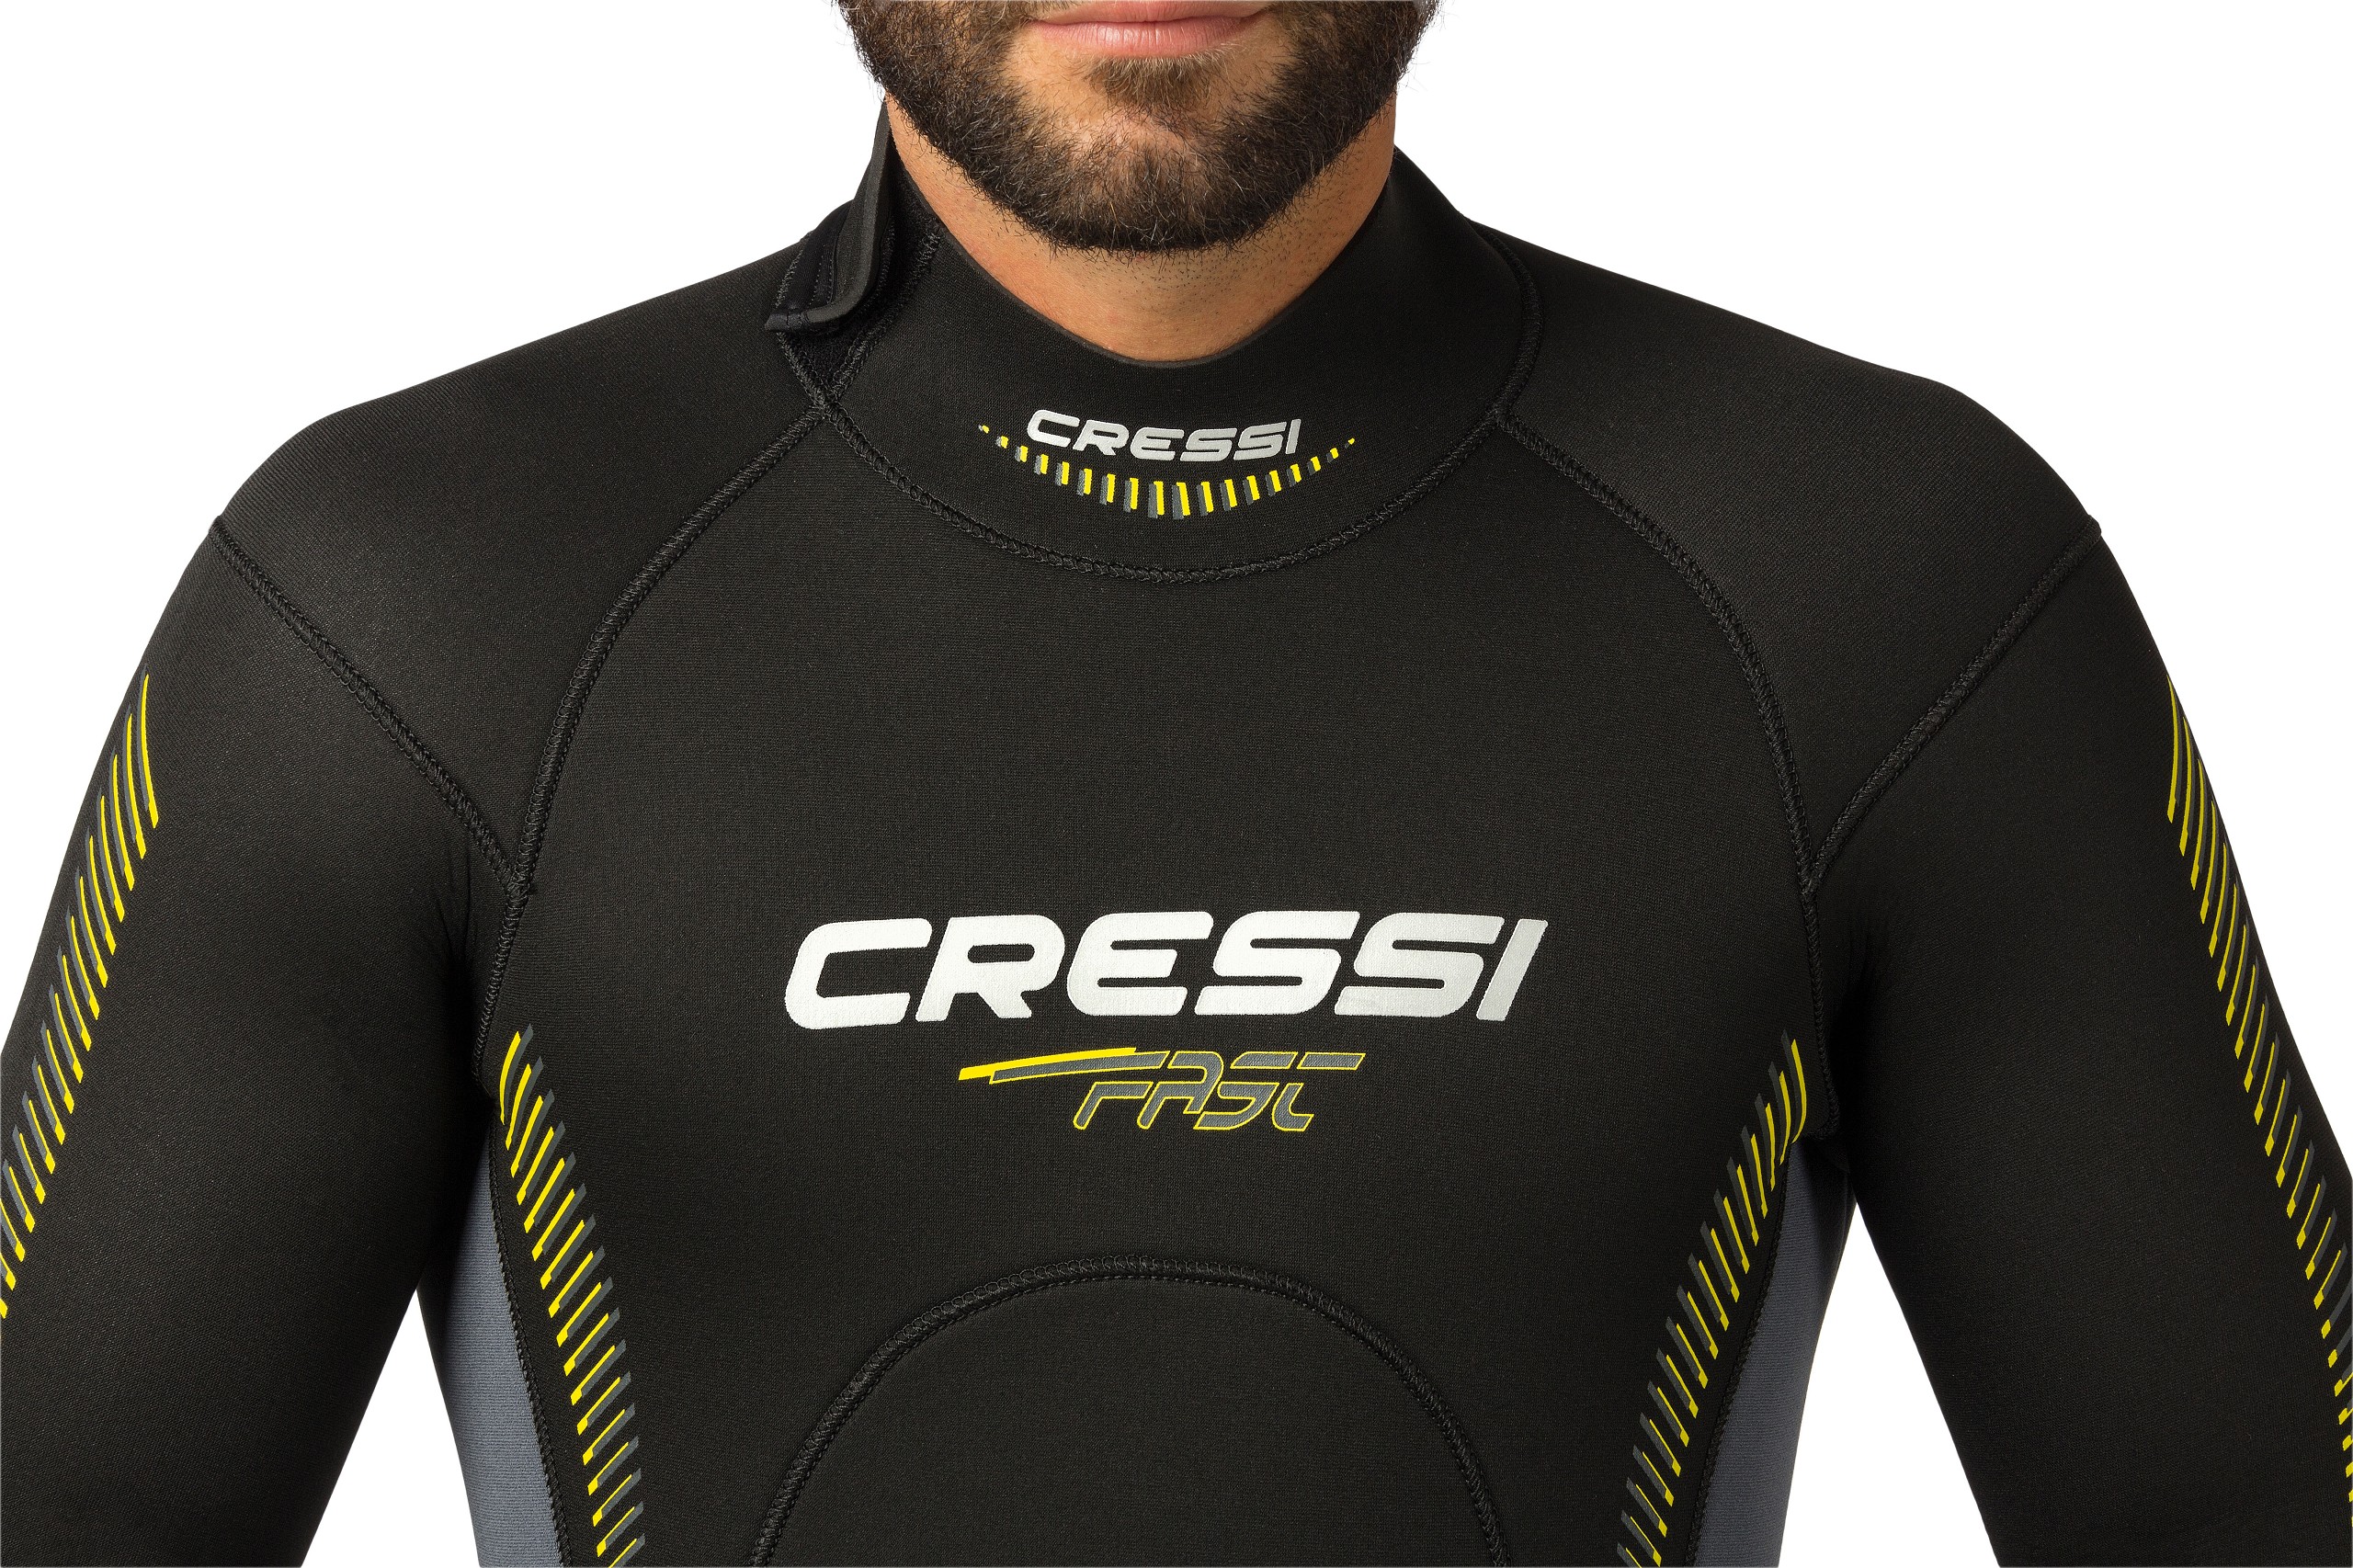 Cressi Cressi Diver Man 5mm S 8022983009896 